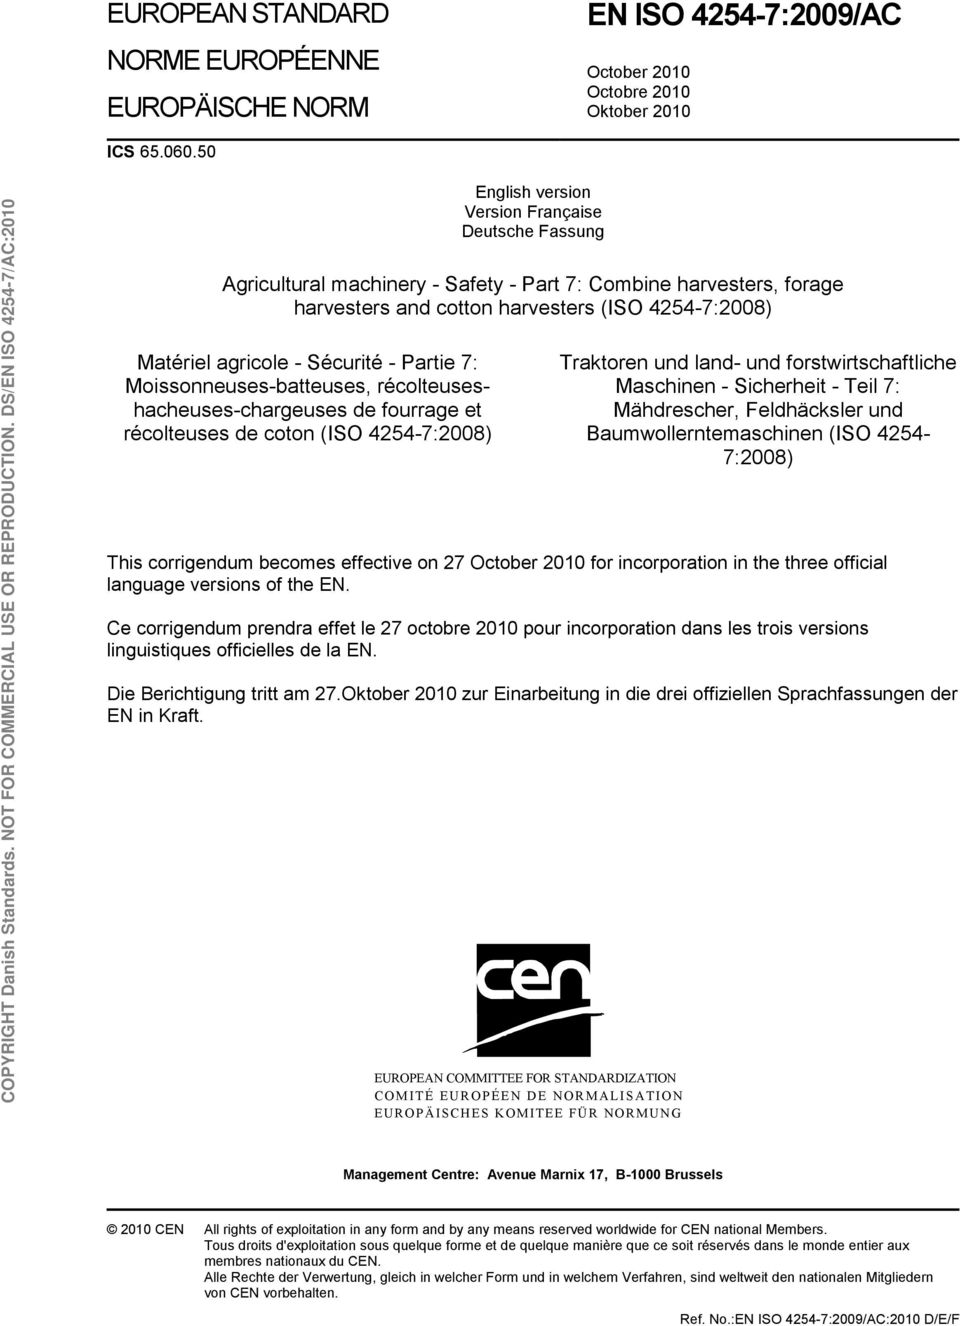 Sécurité - Partie 7: Moissonneuses-batteuses, récolteuseshacheuses-chargeuses de fourrage et récolteuses de coton (ISO 4254-7:2008) Traktoren und land- und forstwirtschaftliche Maschinen - Sicherheit